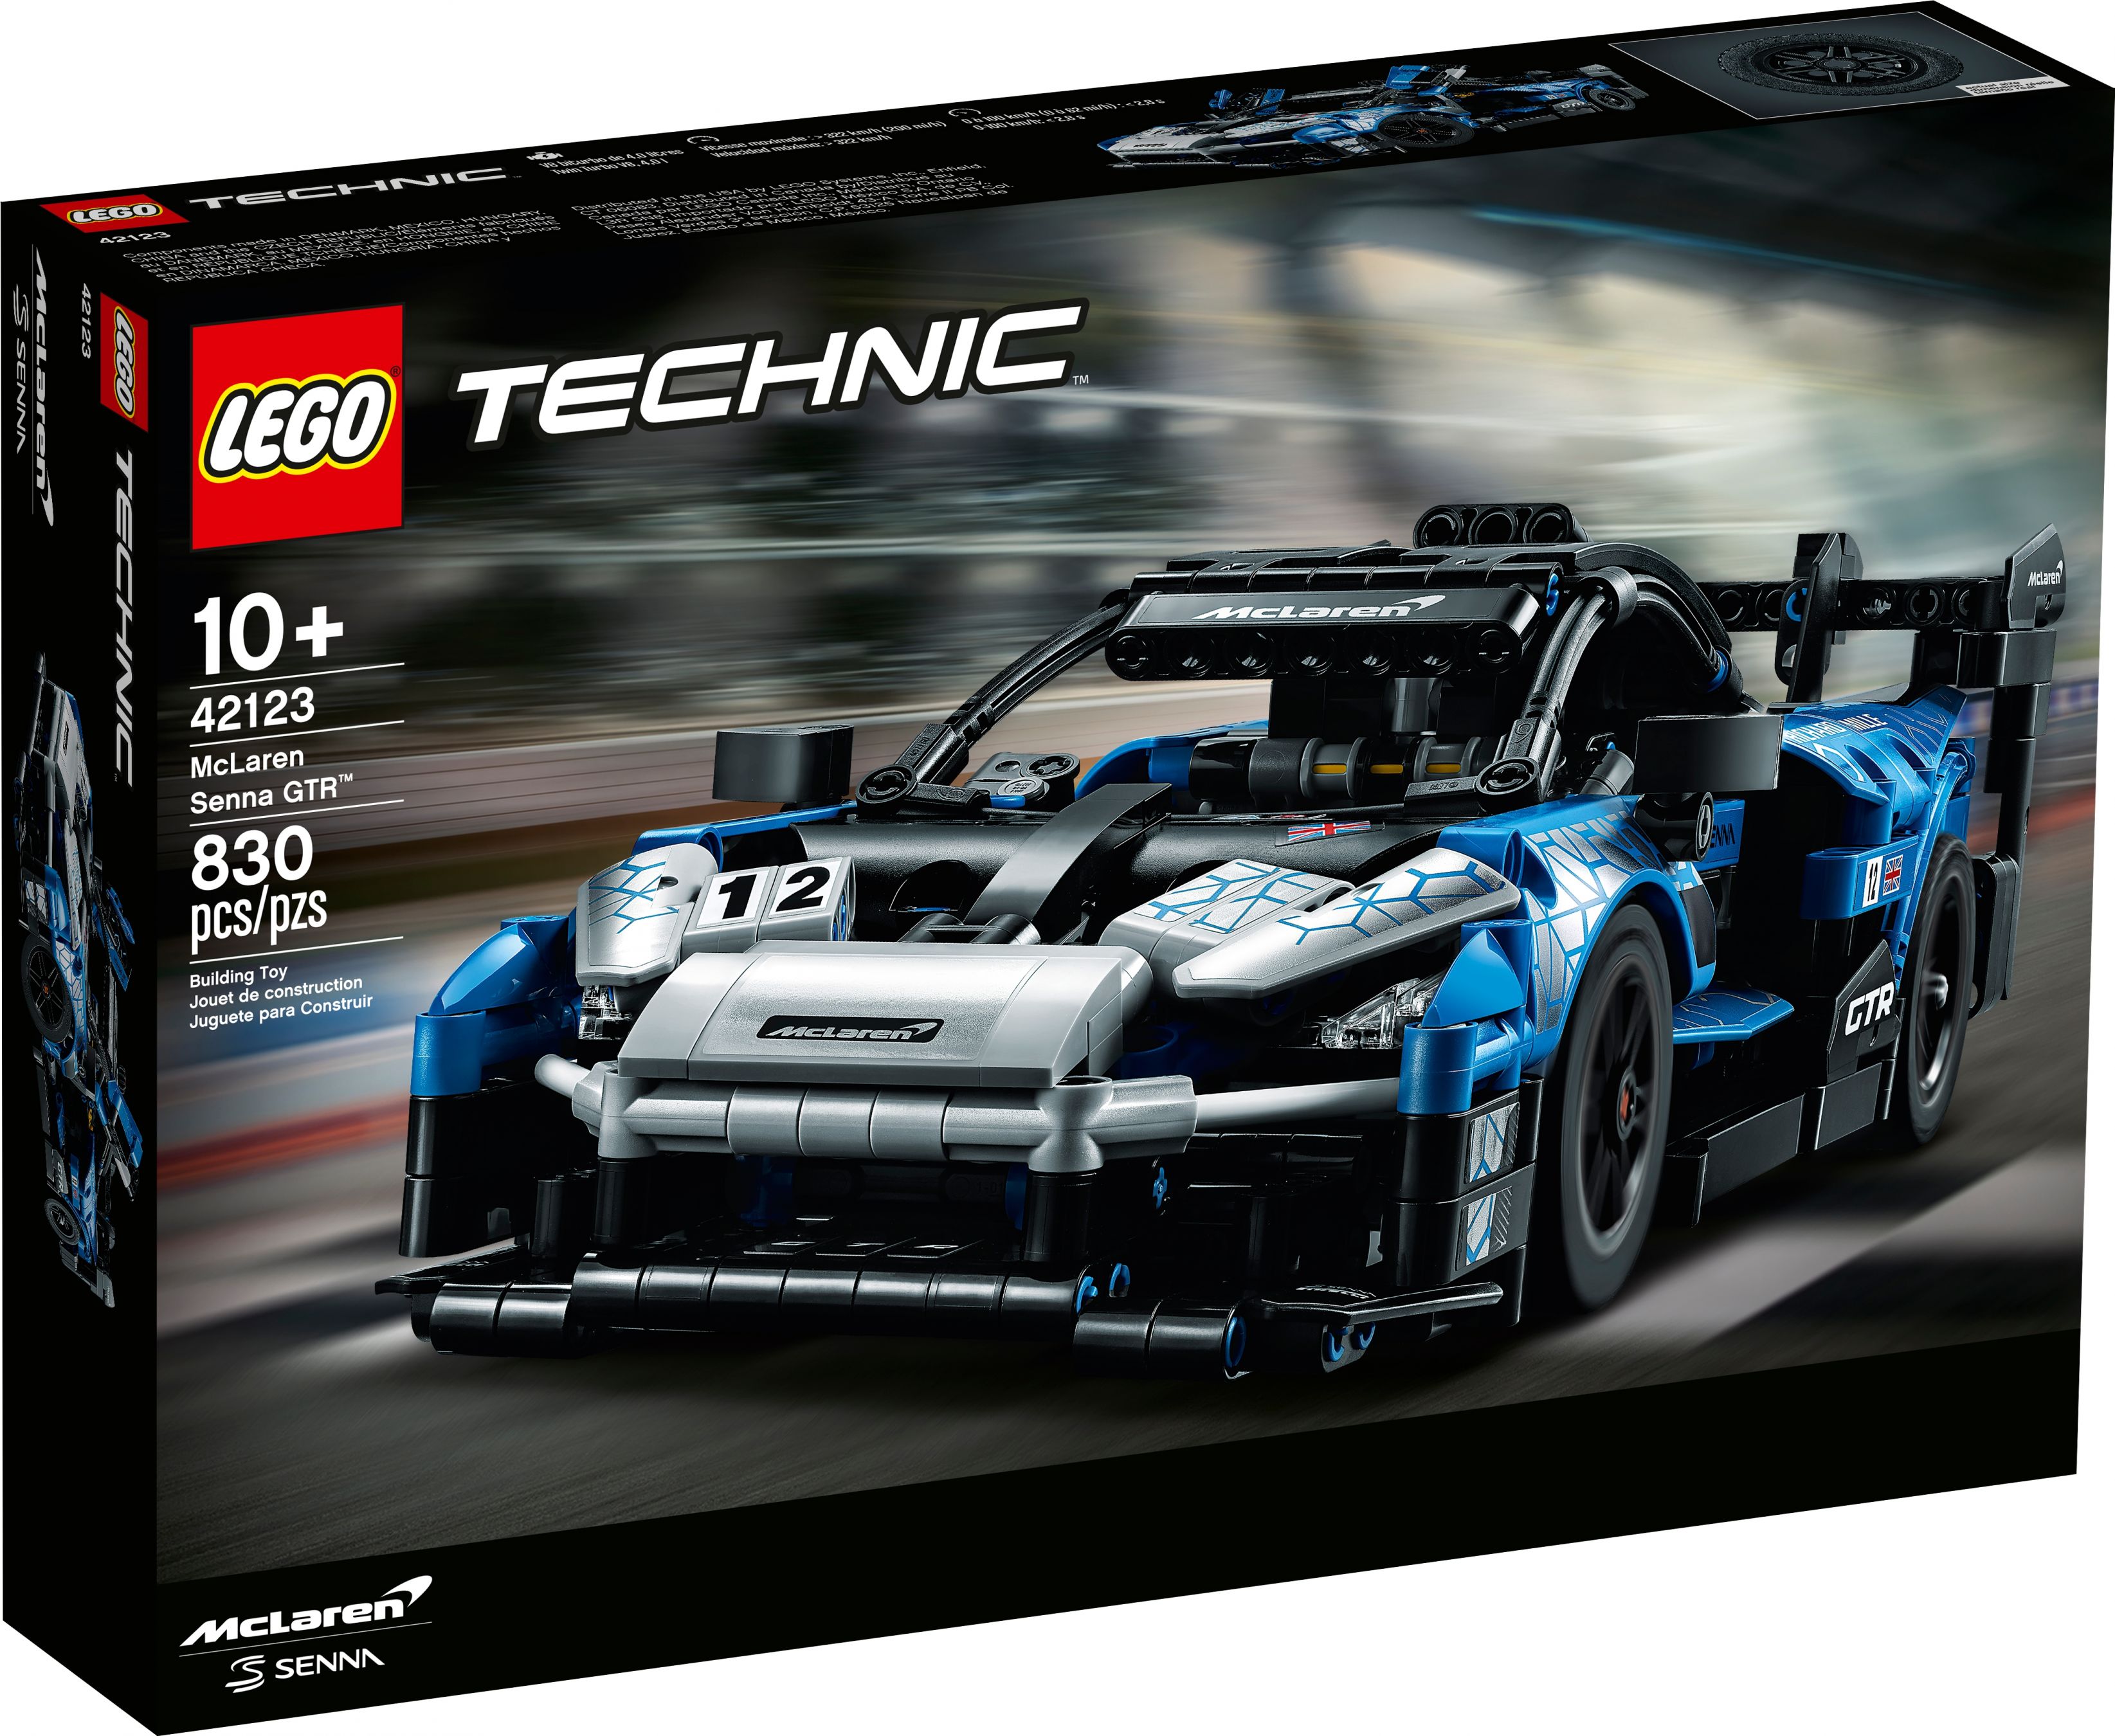 LEGO Technic 42123 McLaren Senna GTR™ LEGO_42123_alt1.jpg